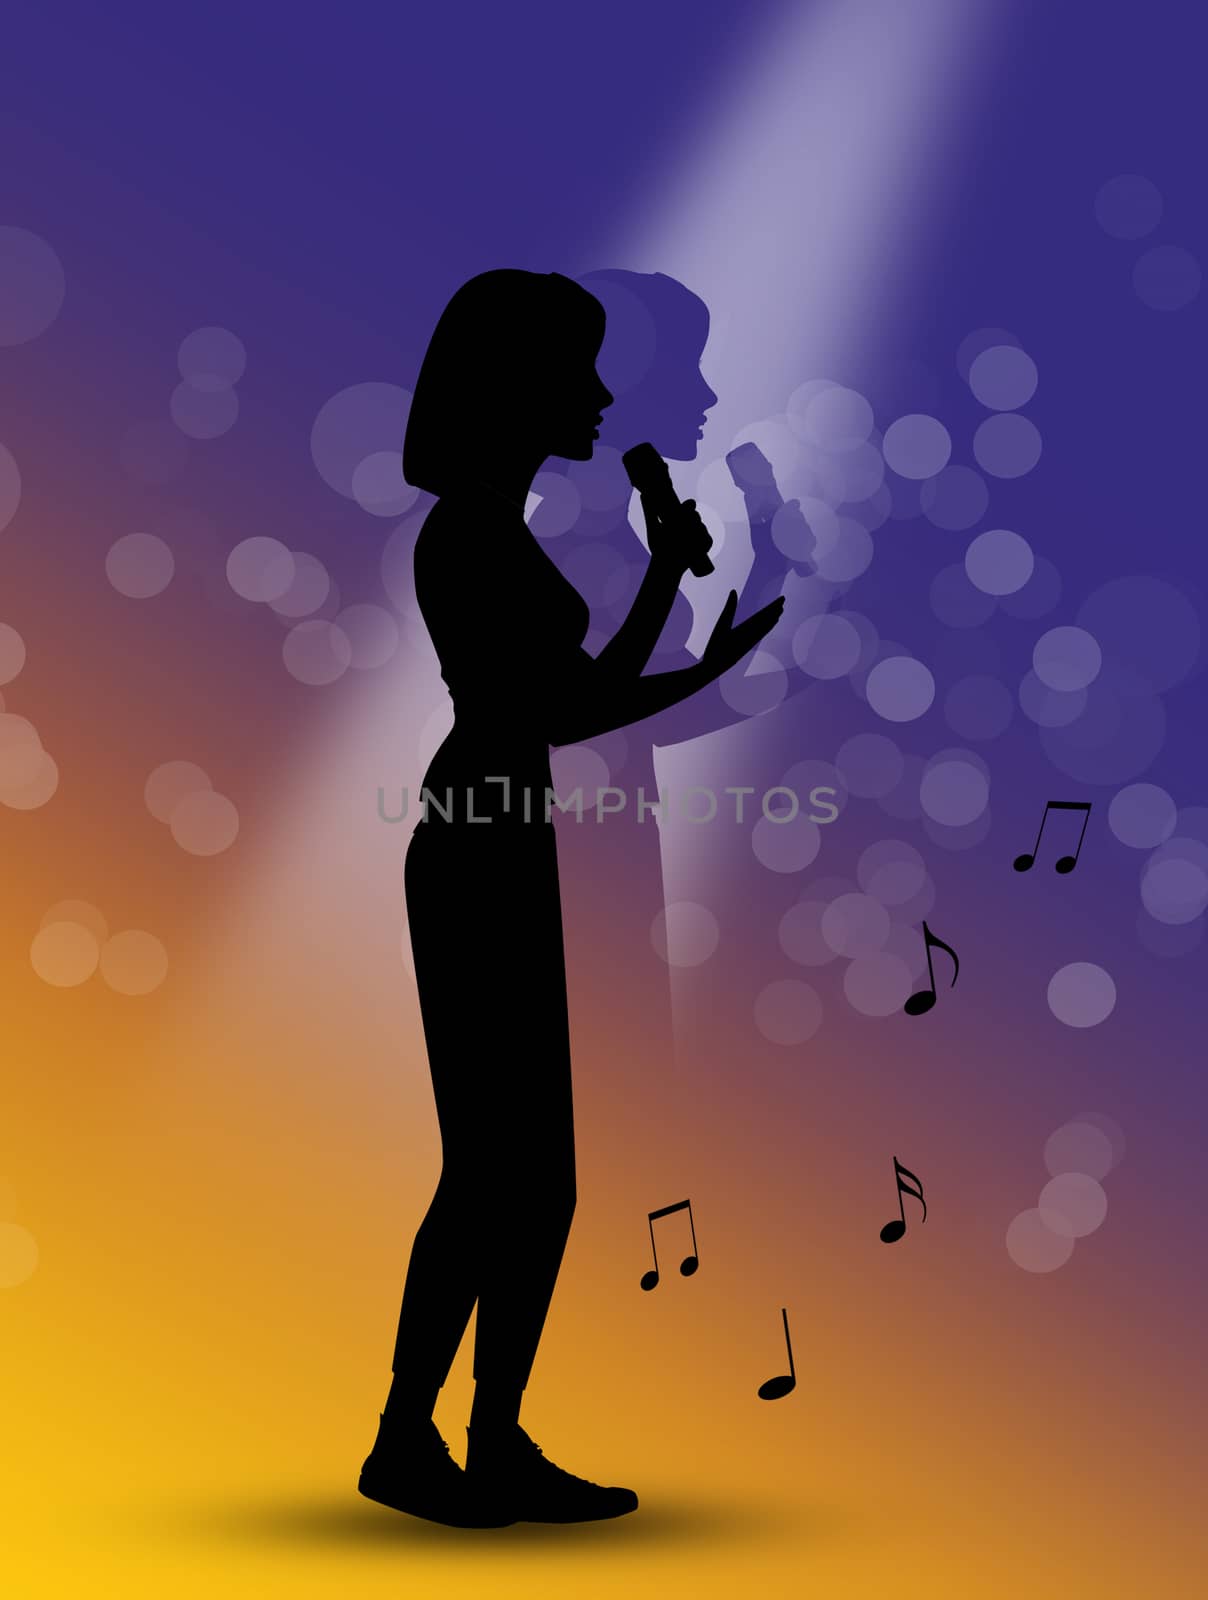 illustration of silhouette of singer